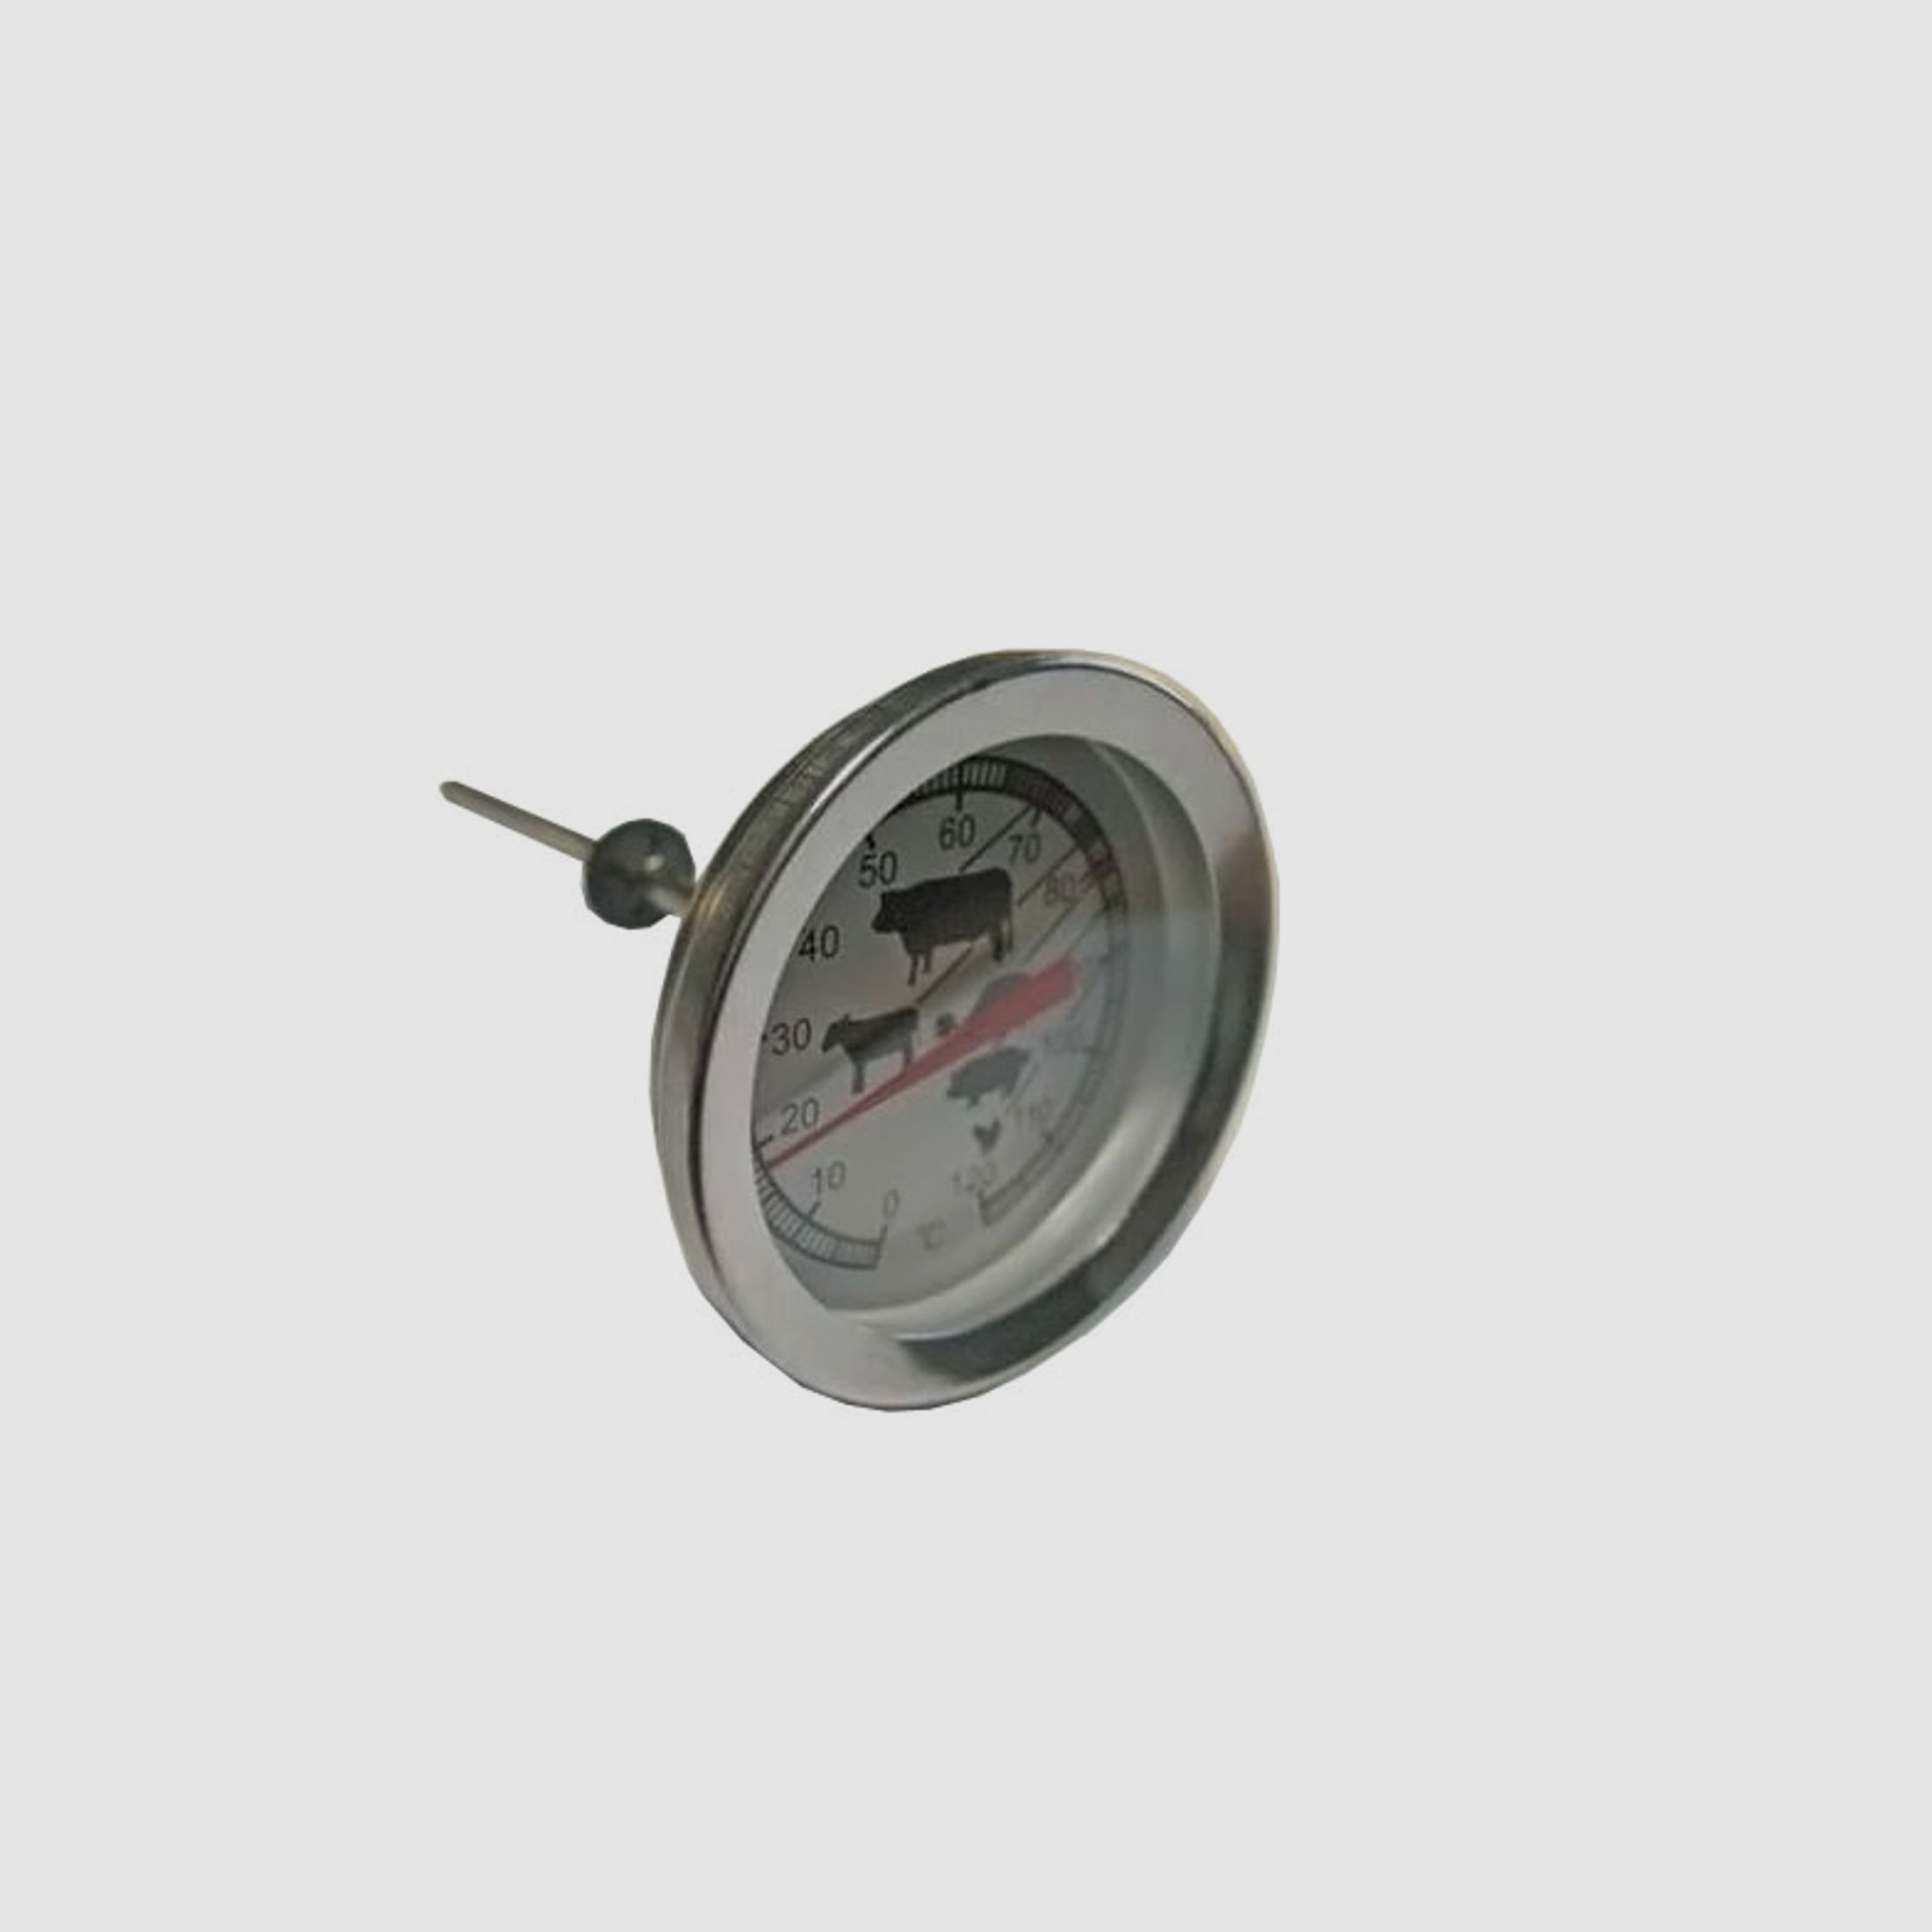 Spezial RĂ¤ucher Thermometer aus Edelstahl StiellĂ¤nge 100 mm Anzeige von 0- 120 Grad Celsius